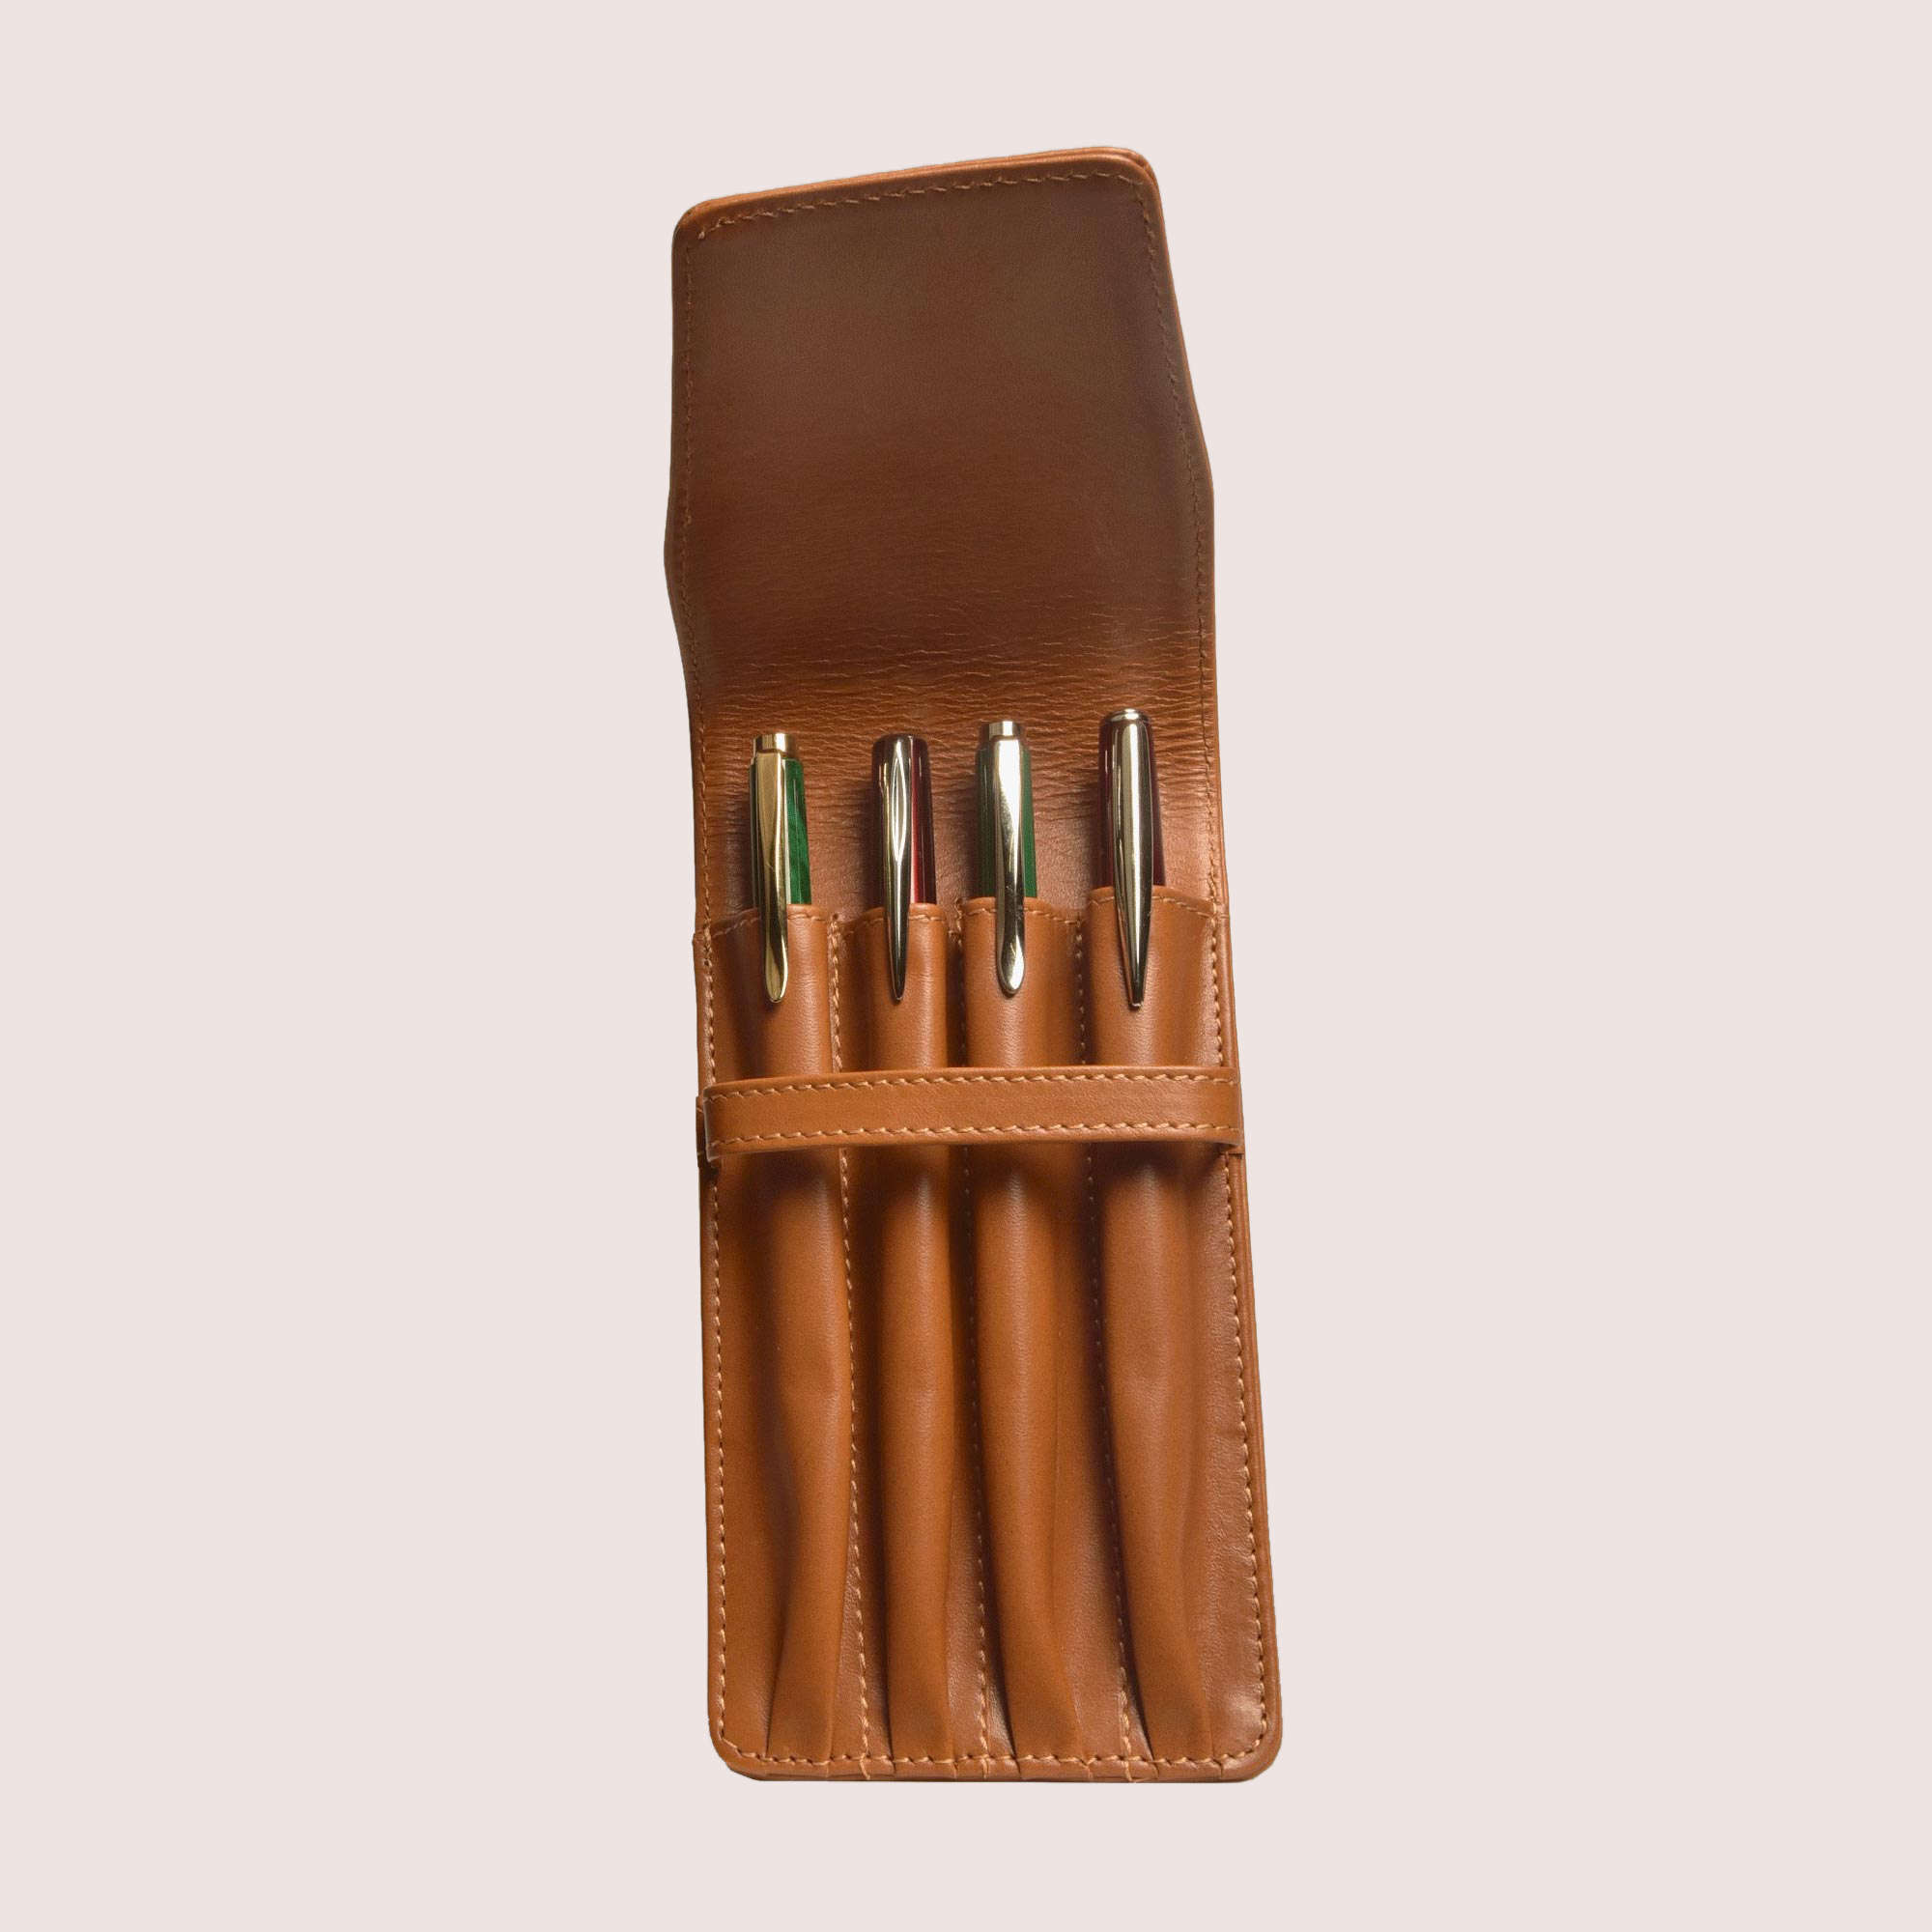 Four Pen Leather Case